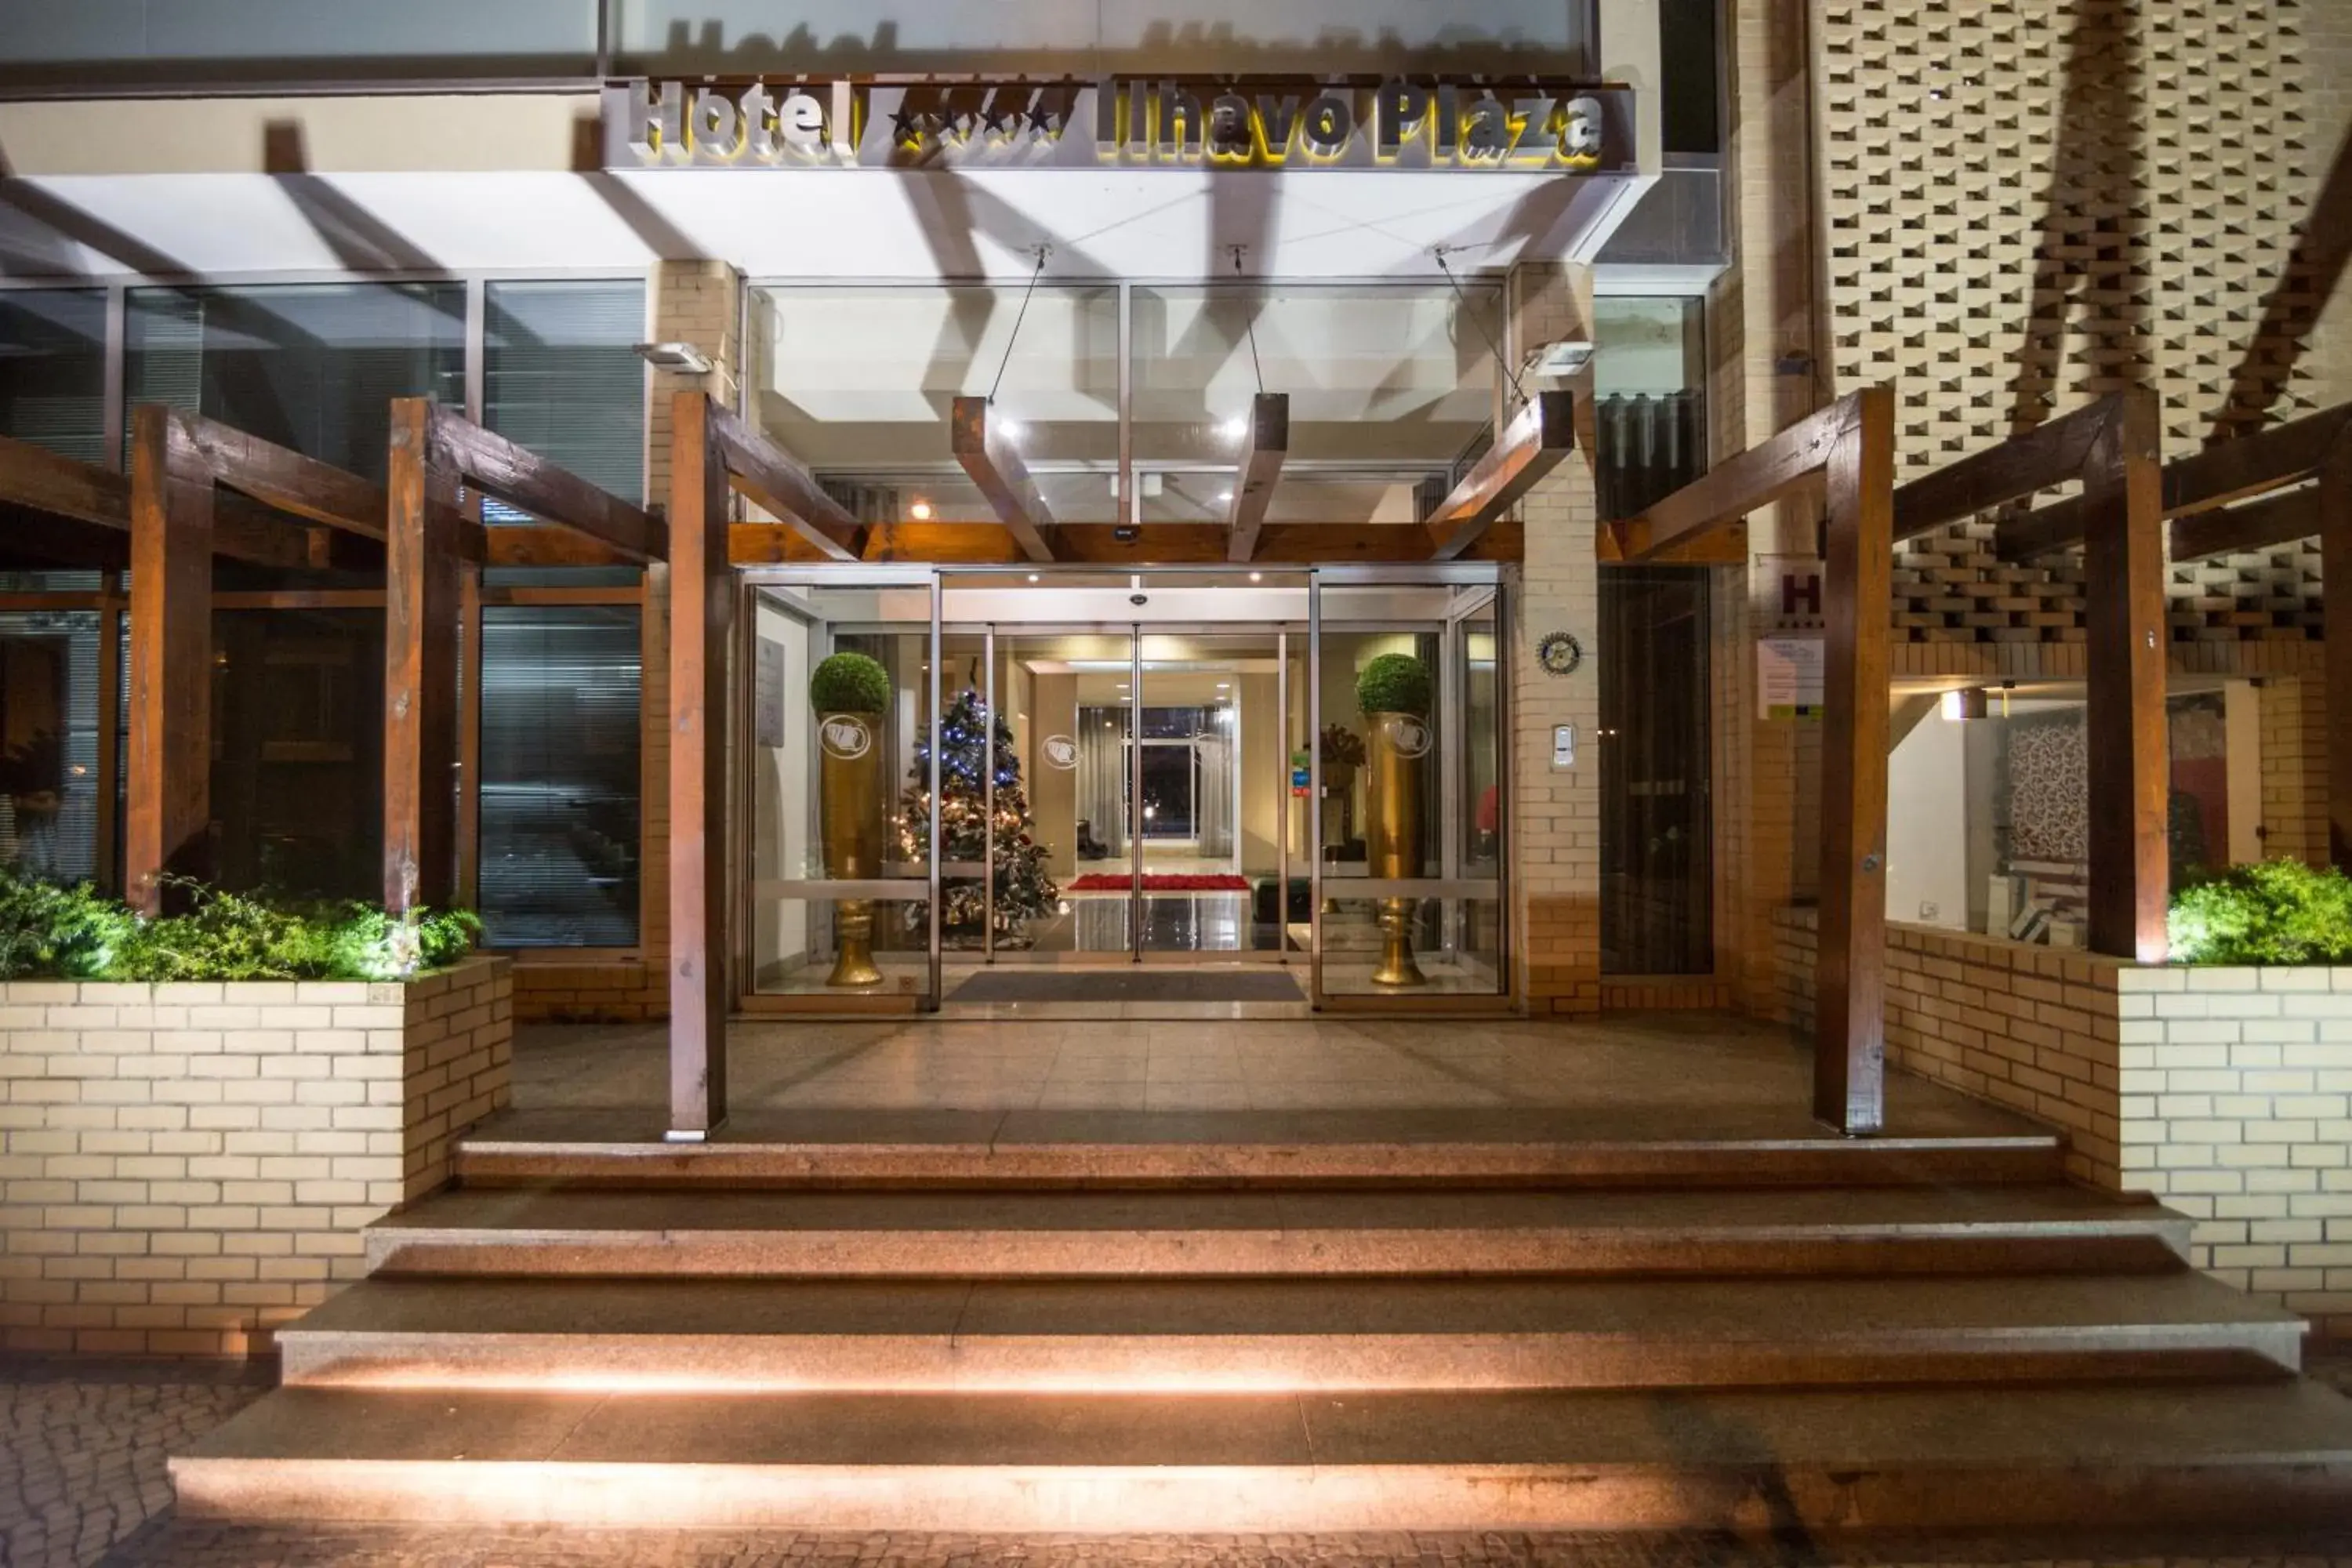 Facade/entrance in Hotel de Ilhavo Plaza & Spa